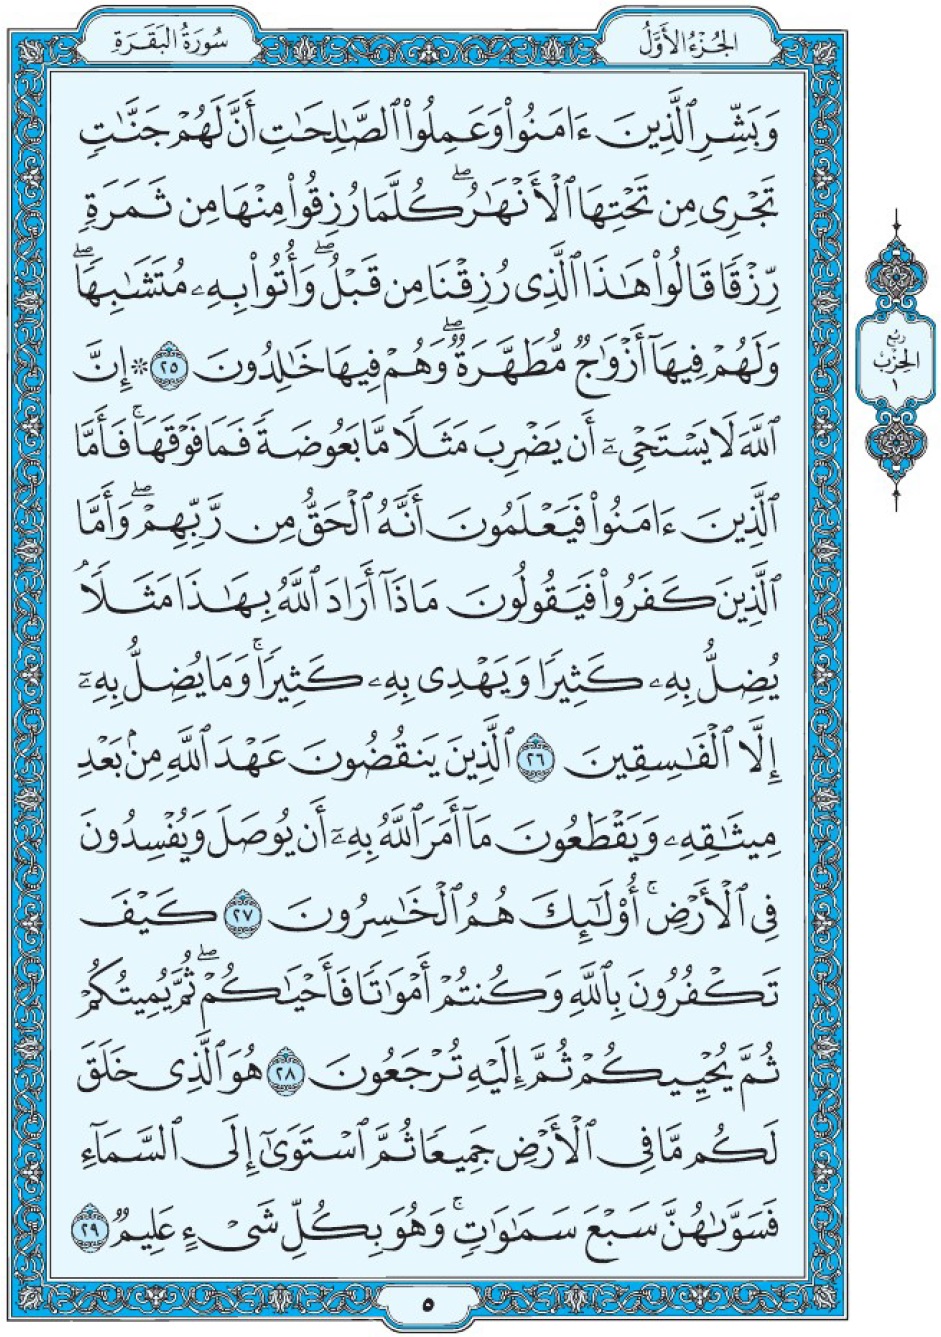 Коран Мединский мусхаф страница 5, Аль-Бакара, аят 25-29